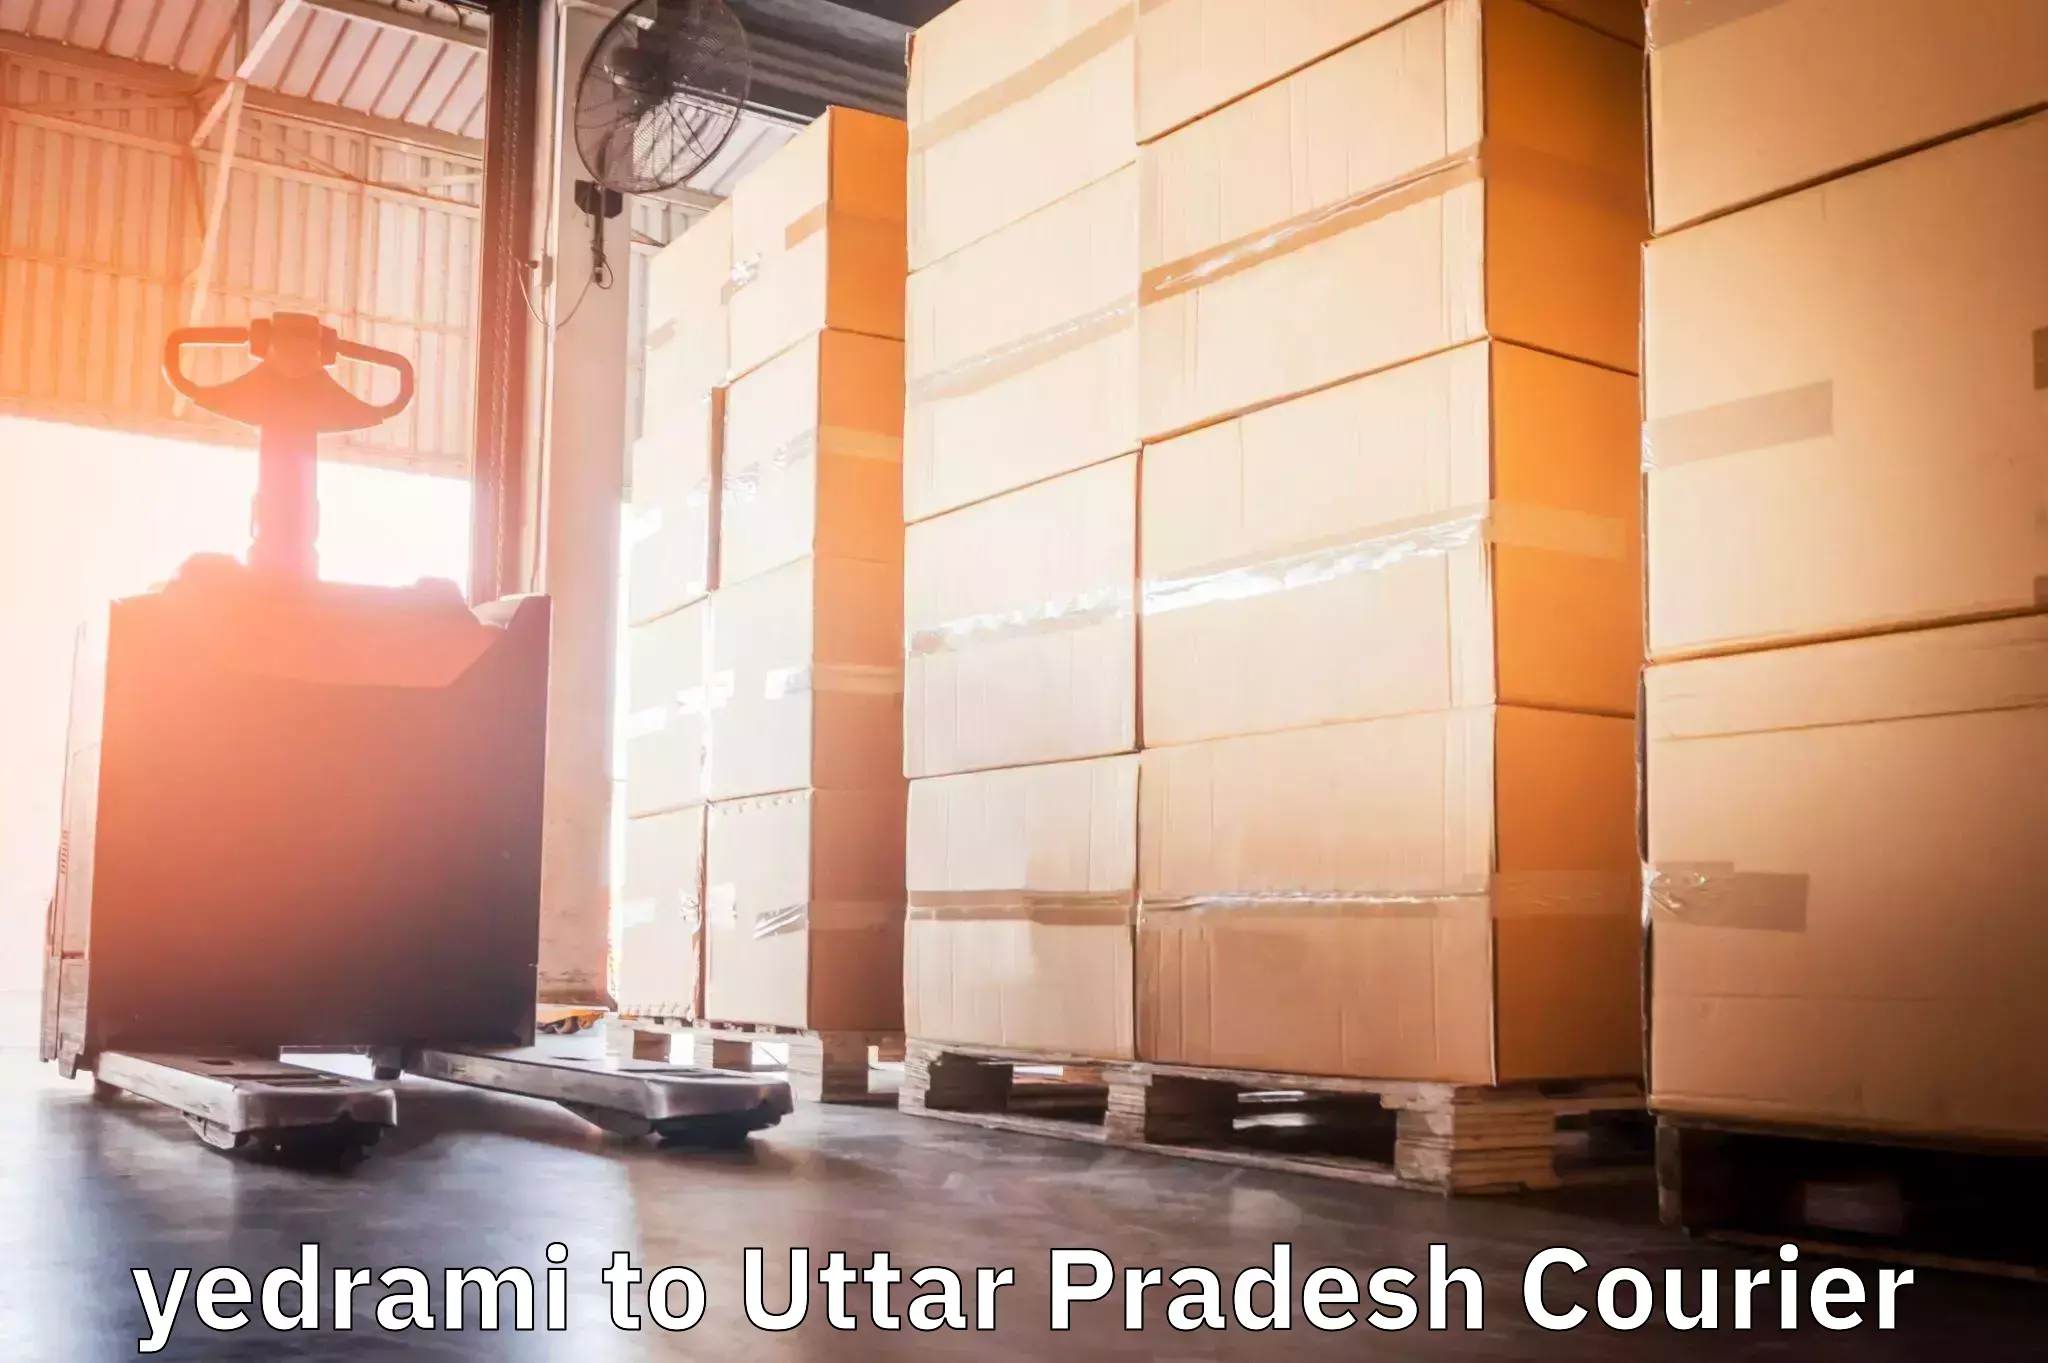 Premium courier solutions yedrami to Uttar Pradesh